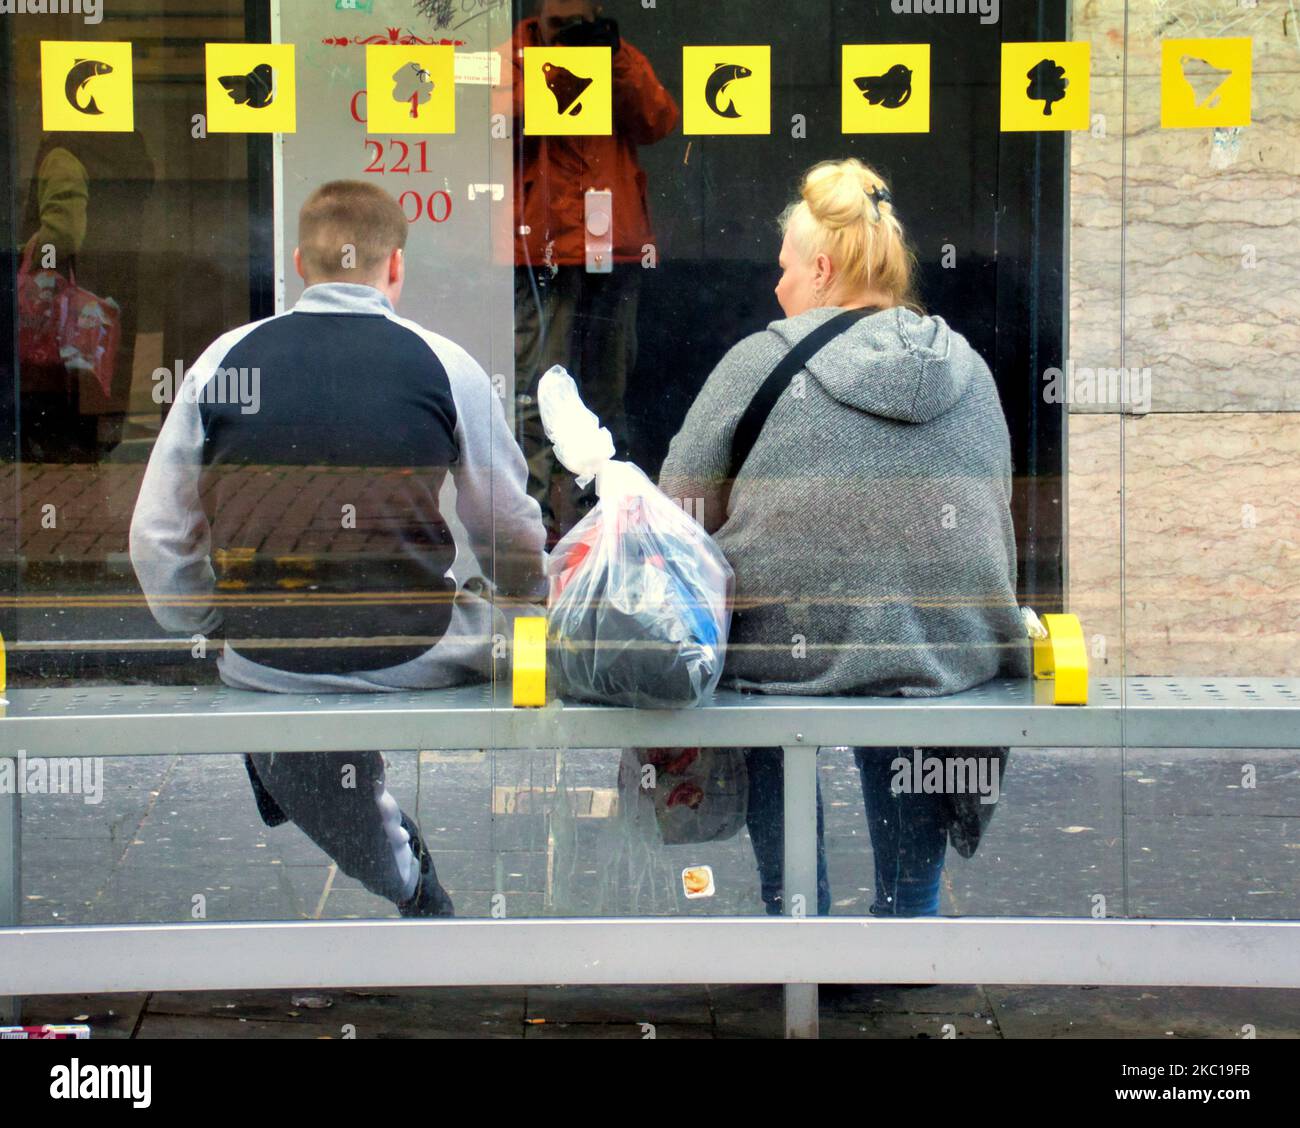 Passeggeri in sovrappeso a una fermata dell'autobus sotto i simboli iconici della città di Glasgow del suo mito Foto Stock